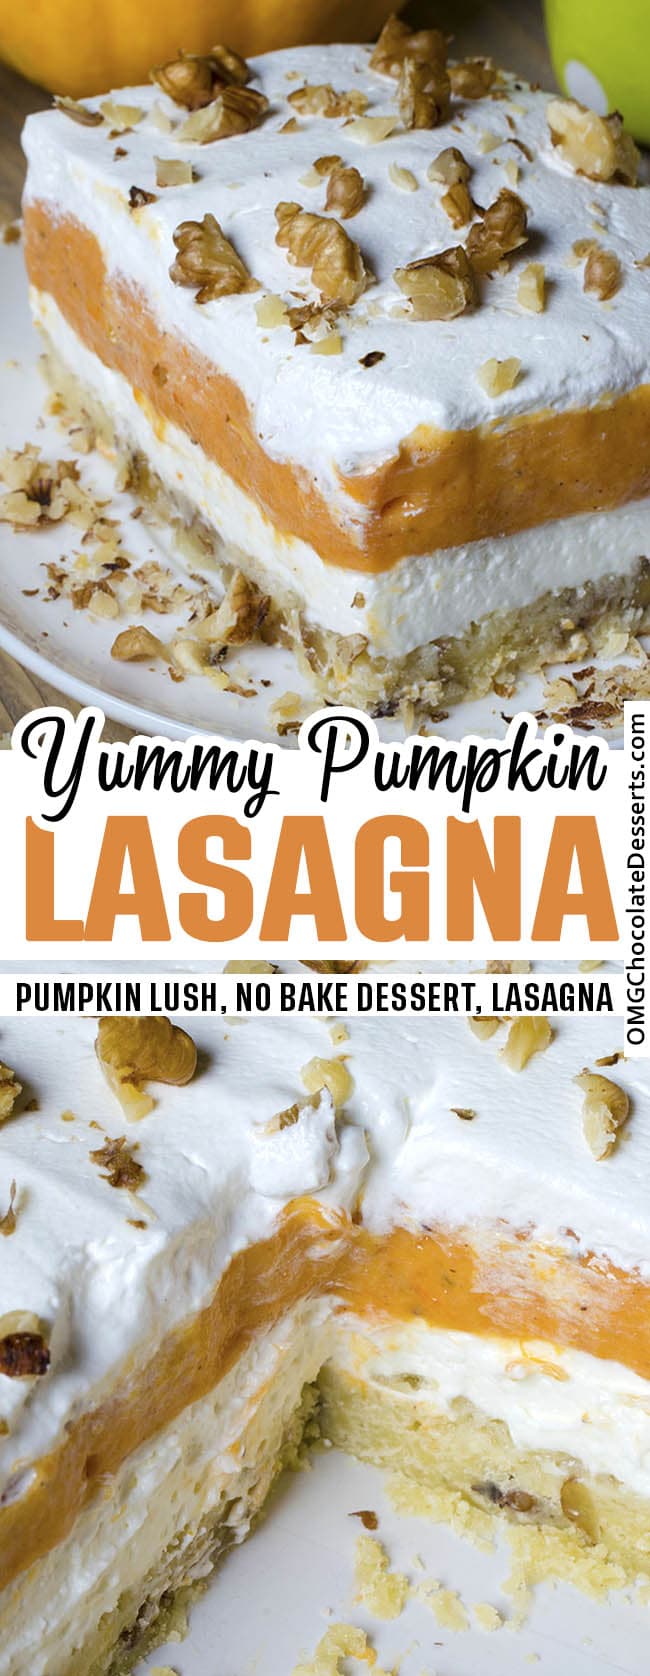 Pumpkin lasagna